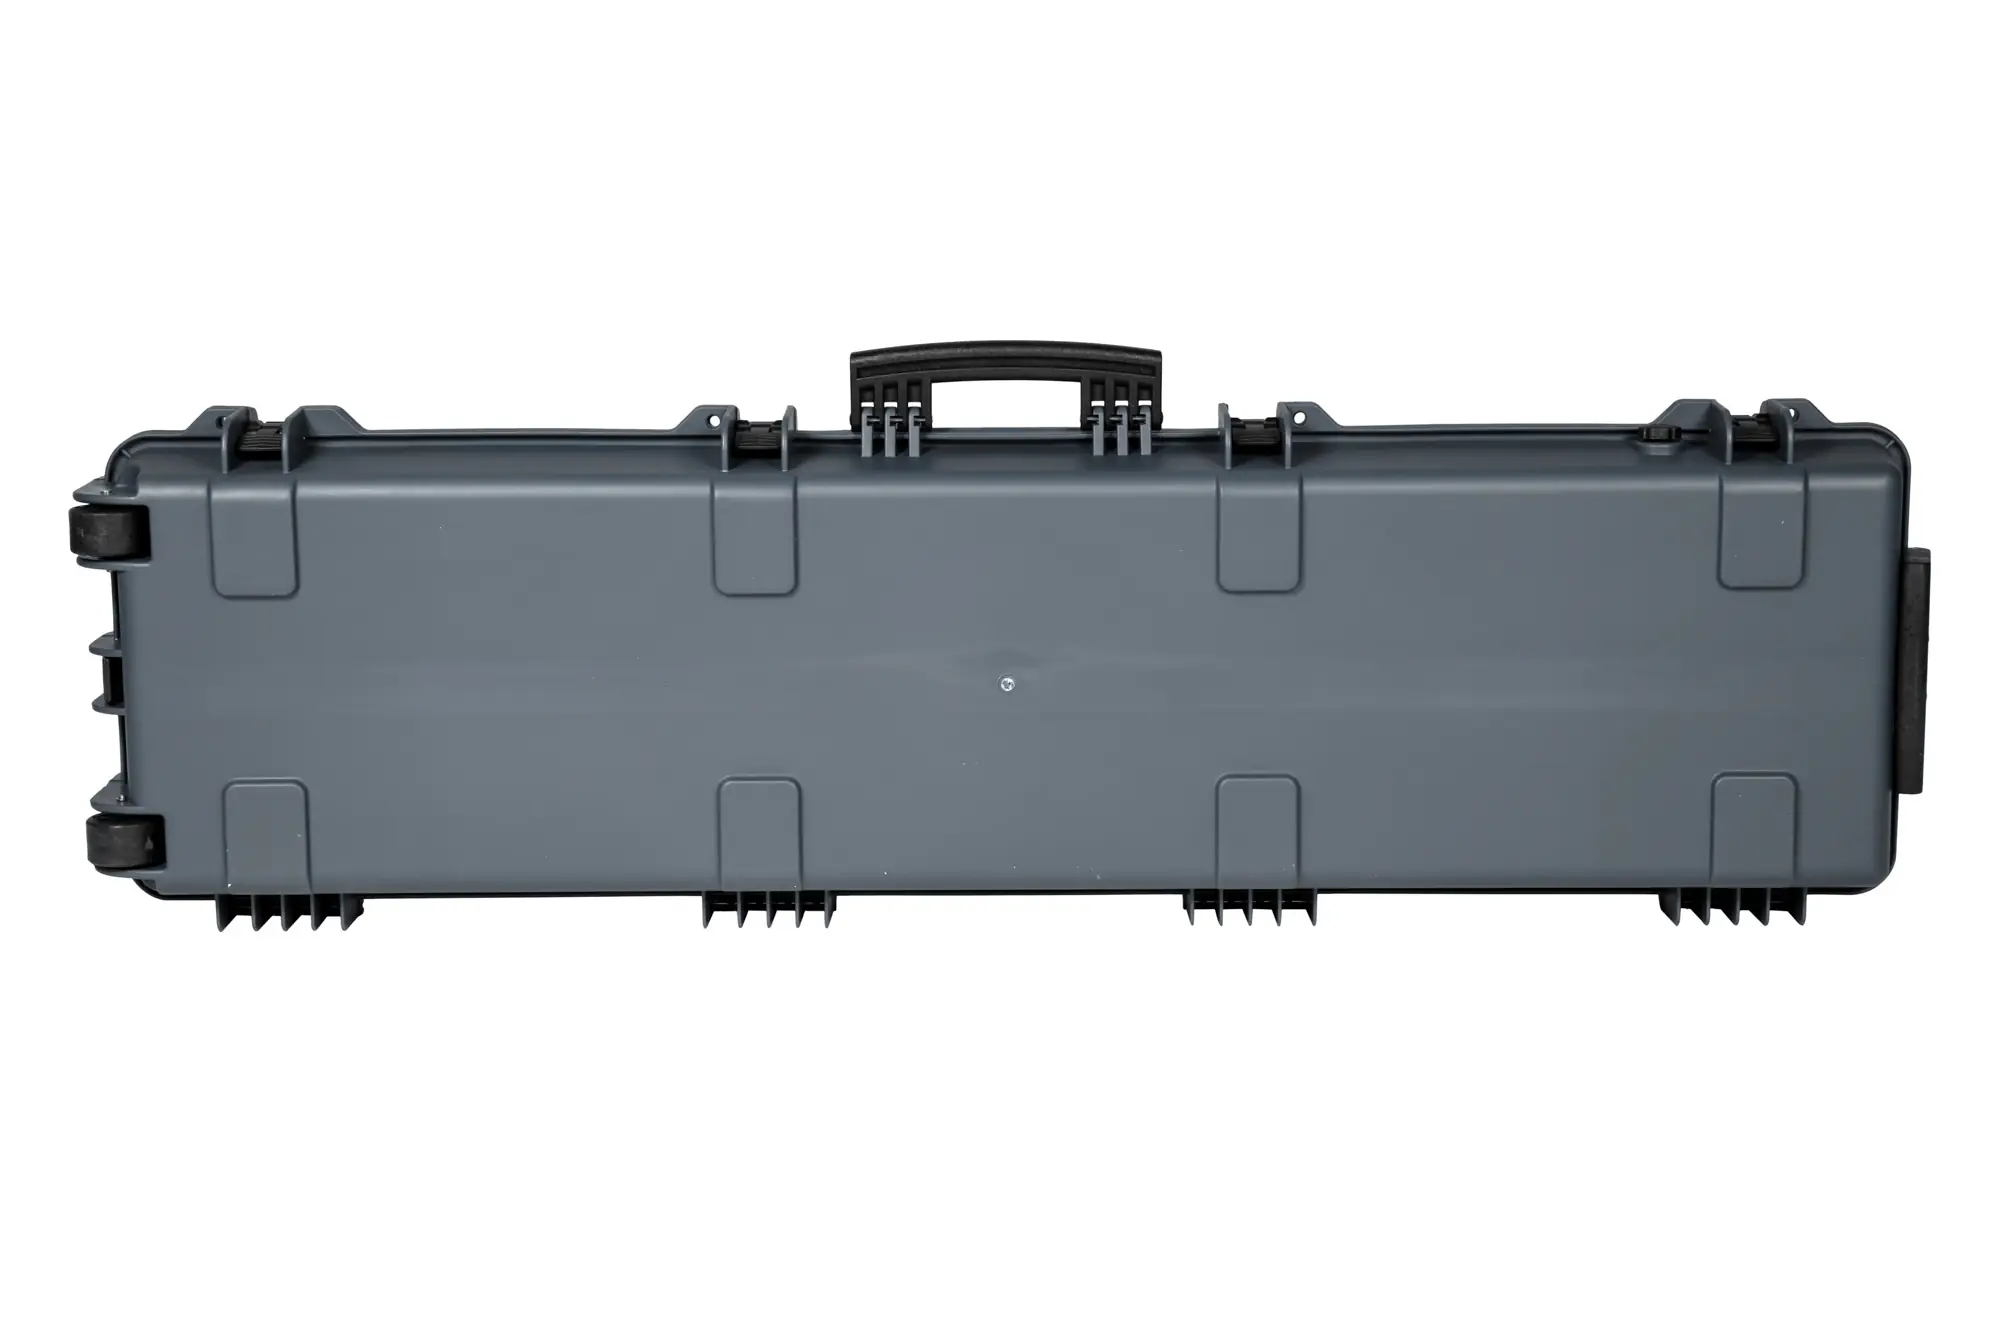 Walizka transportowa NP XL Hard Case 137cm (PnP) - Szara